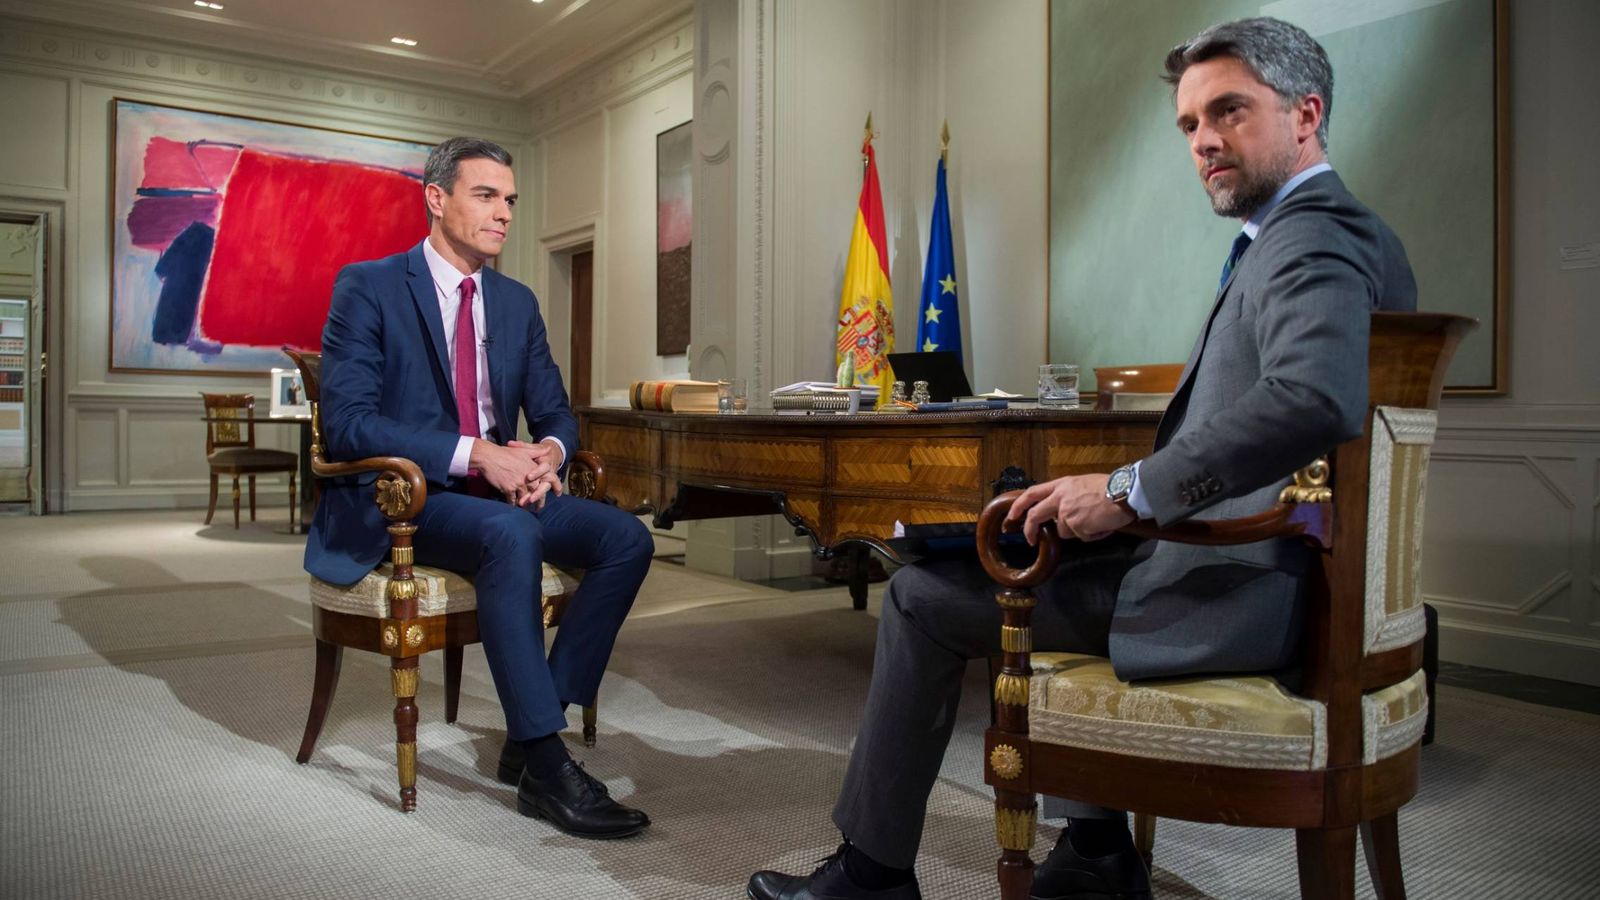 Foto: Pedro Sánchez, durante la entrevista con el periodista Carlos Franganillo en TVE, este 18 de febrero. (Borja Puig de la Bellacasa | Moncloa)